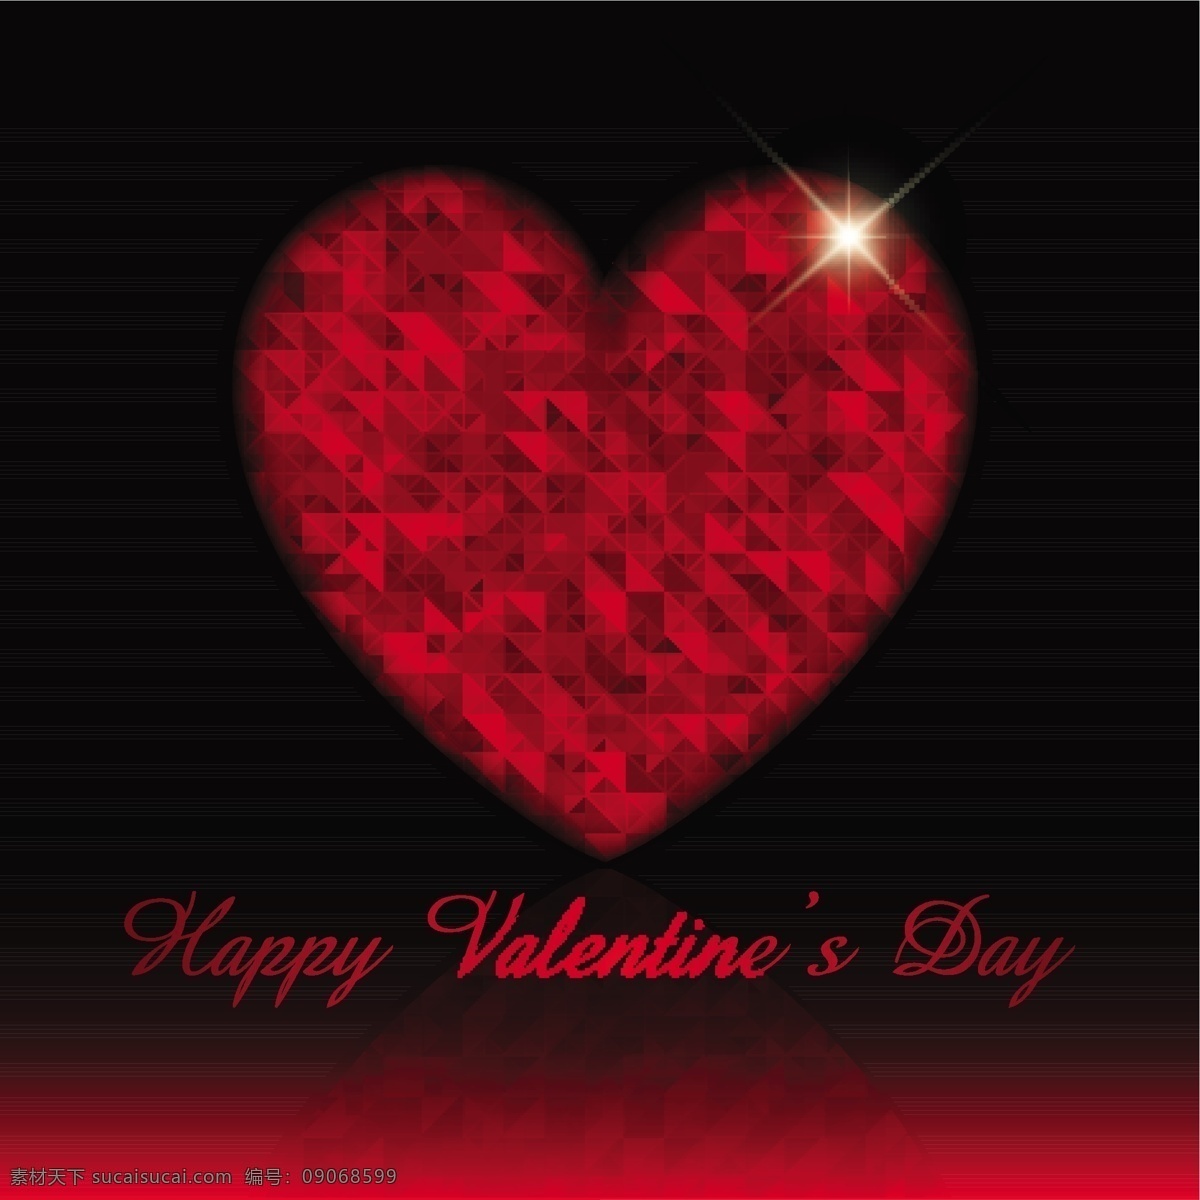 黑色 红色 背景 情人节 心脏 卡片 爱情 庆祝 快乐 情侣 浪漫 美丽 节日 丘比特 问候 二月 年度